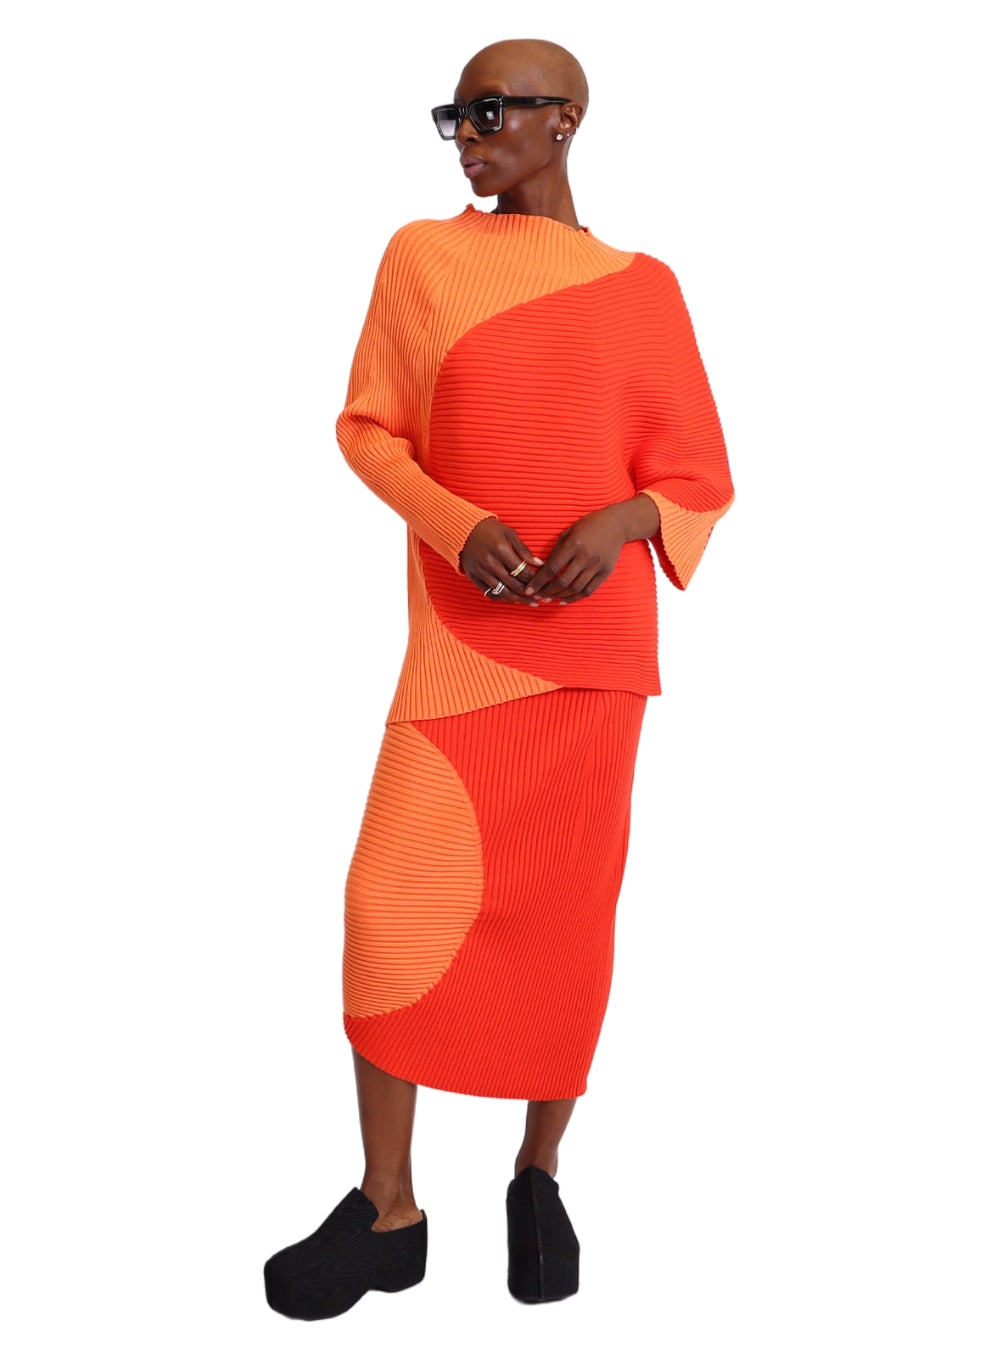 LIVIANA CONTI | Ribbed Knit Color Block Skirt